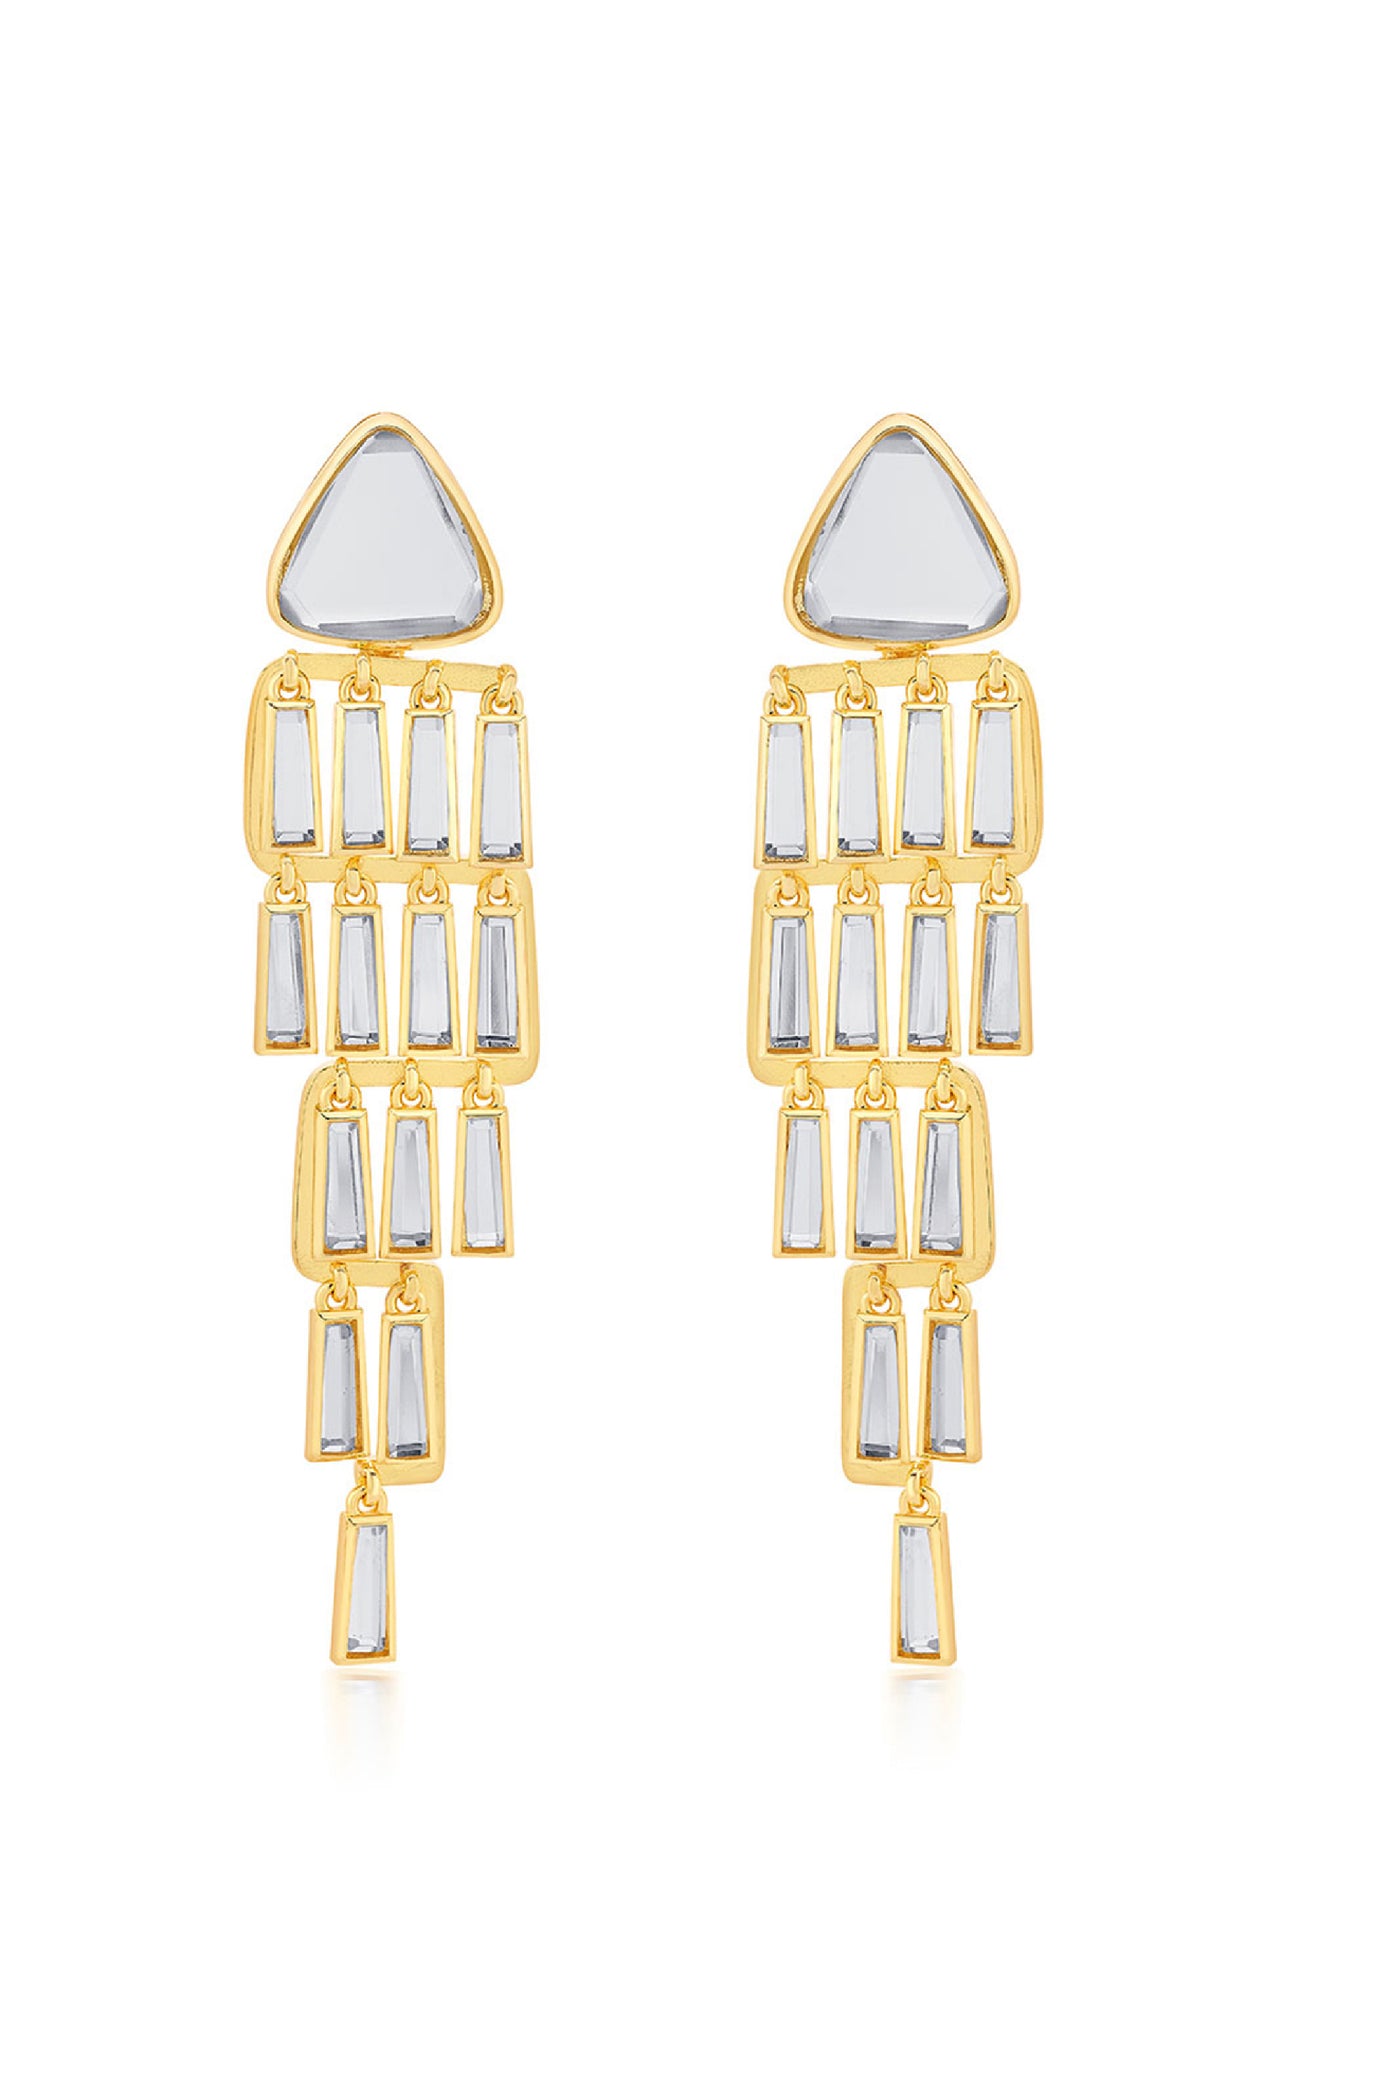 Isharya Fête Mirror Waterfall Earrings jewellery indian designer wear online shopping melange singapore